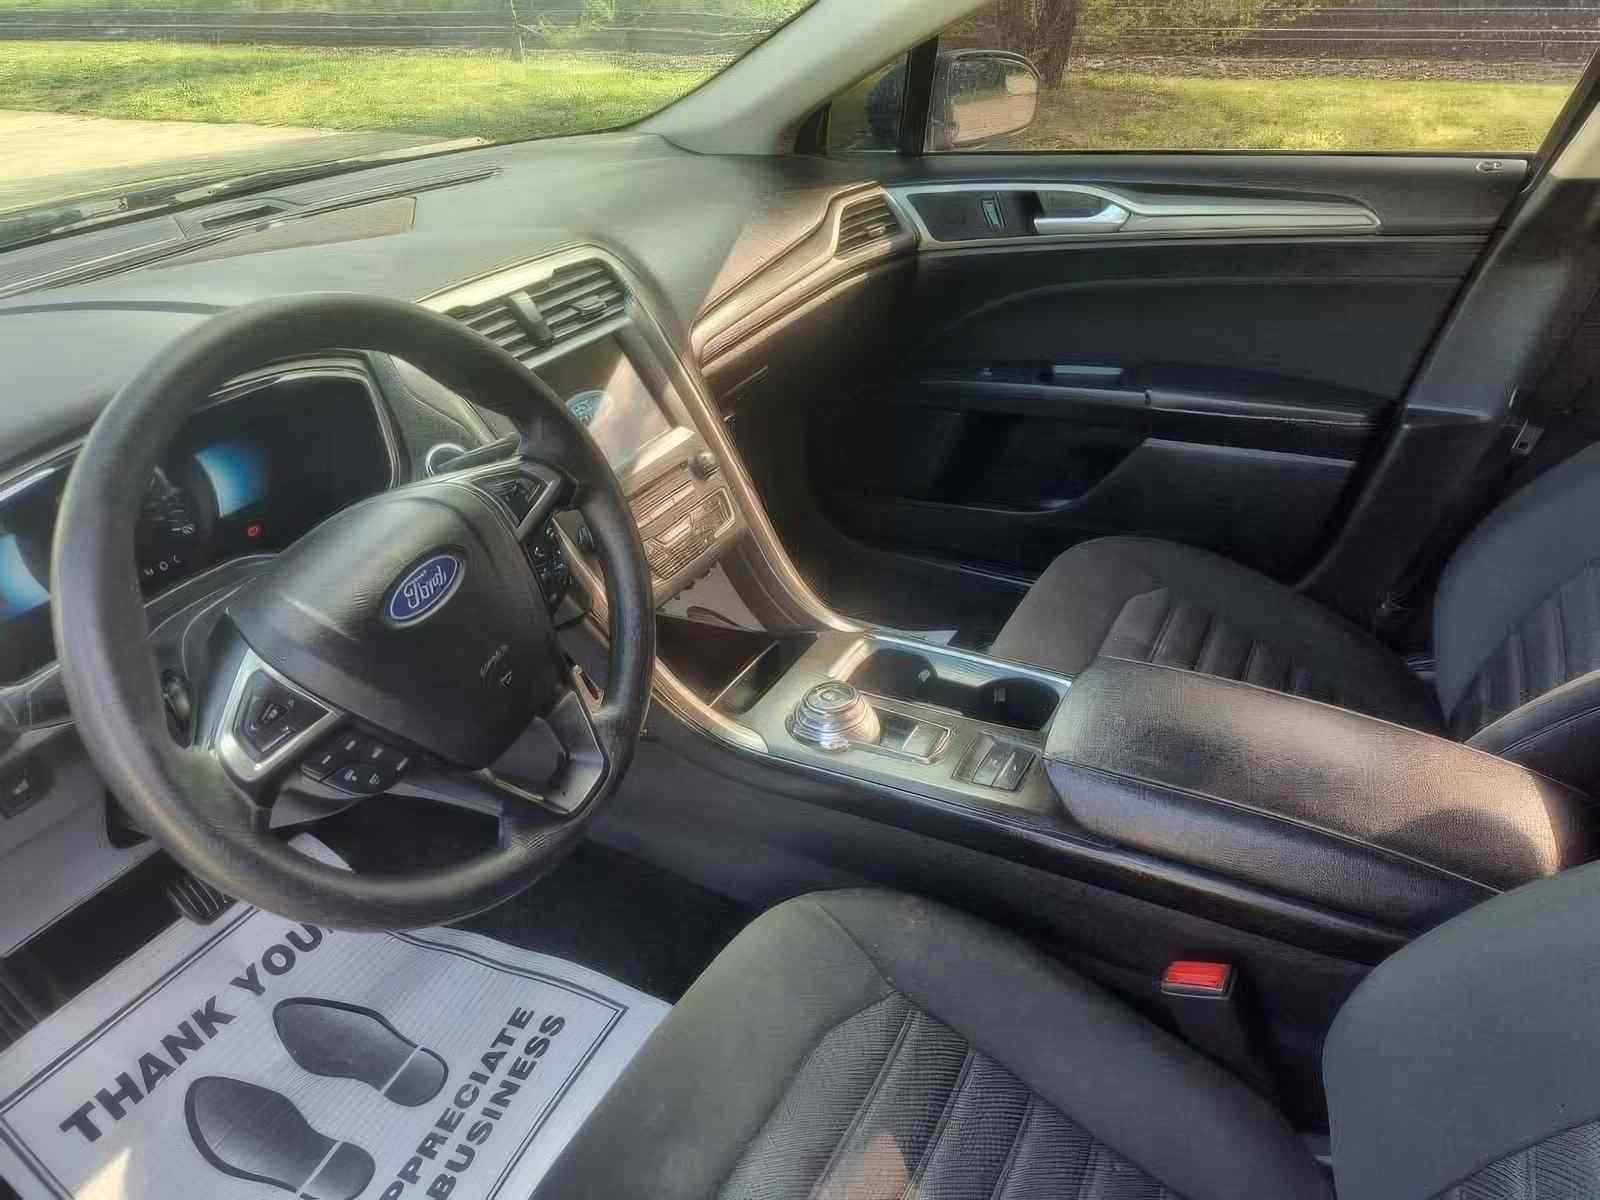 2018 Ford Fusion Hybrid